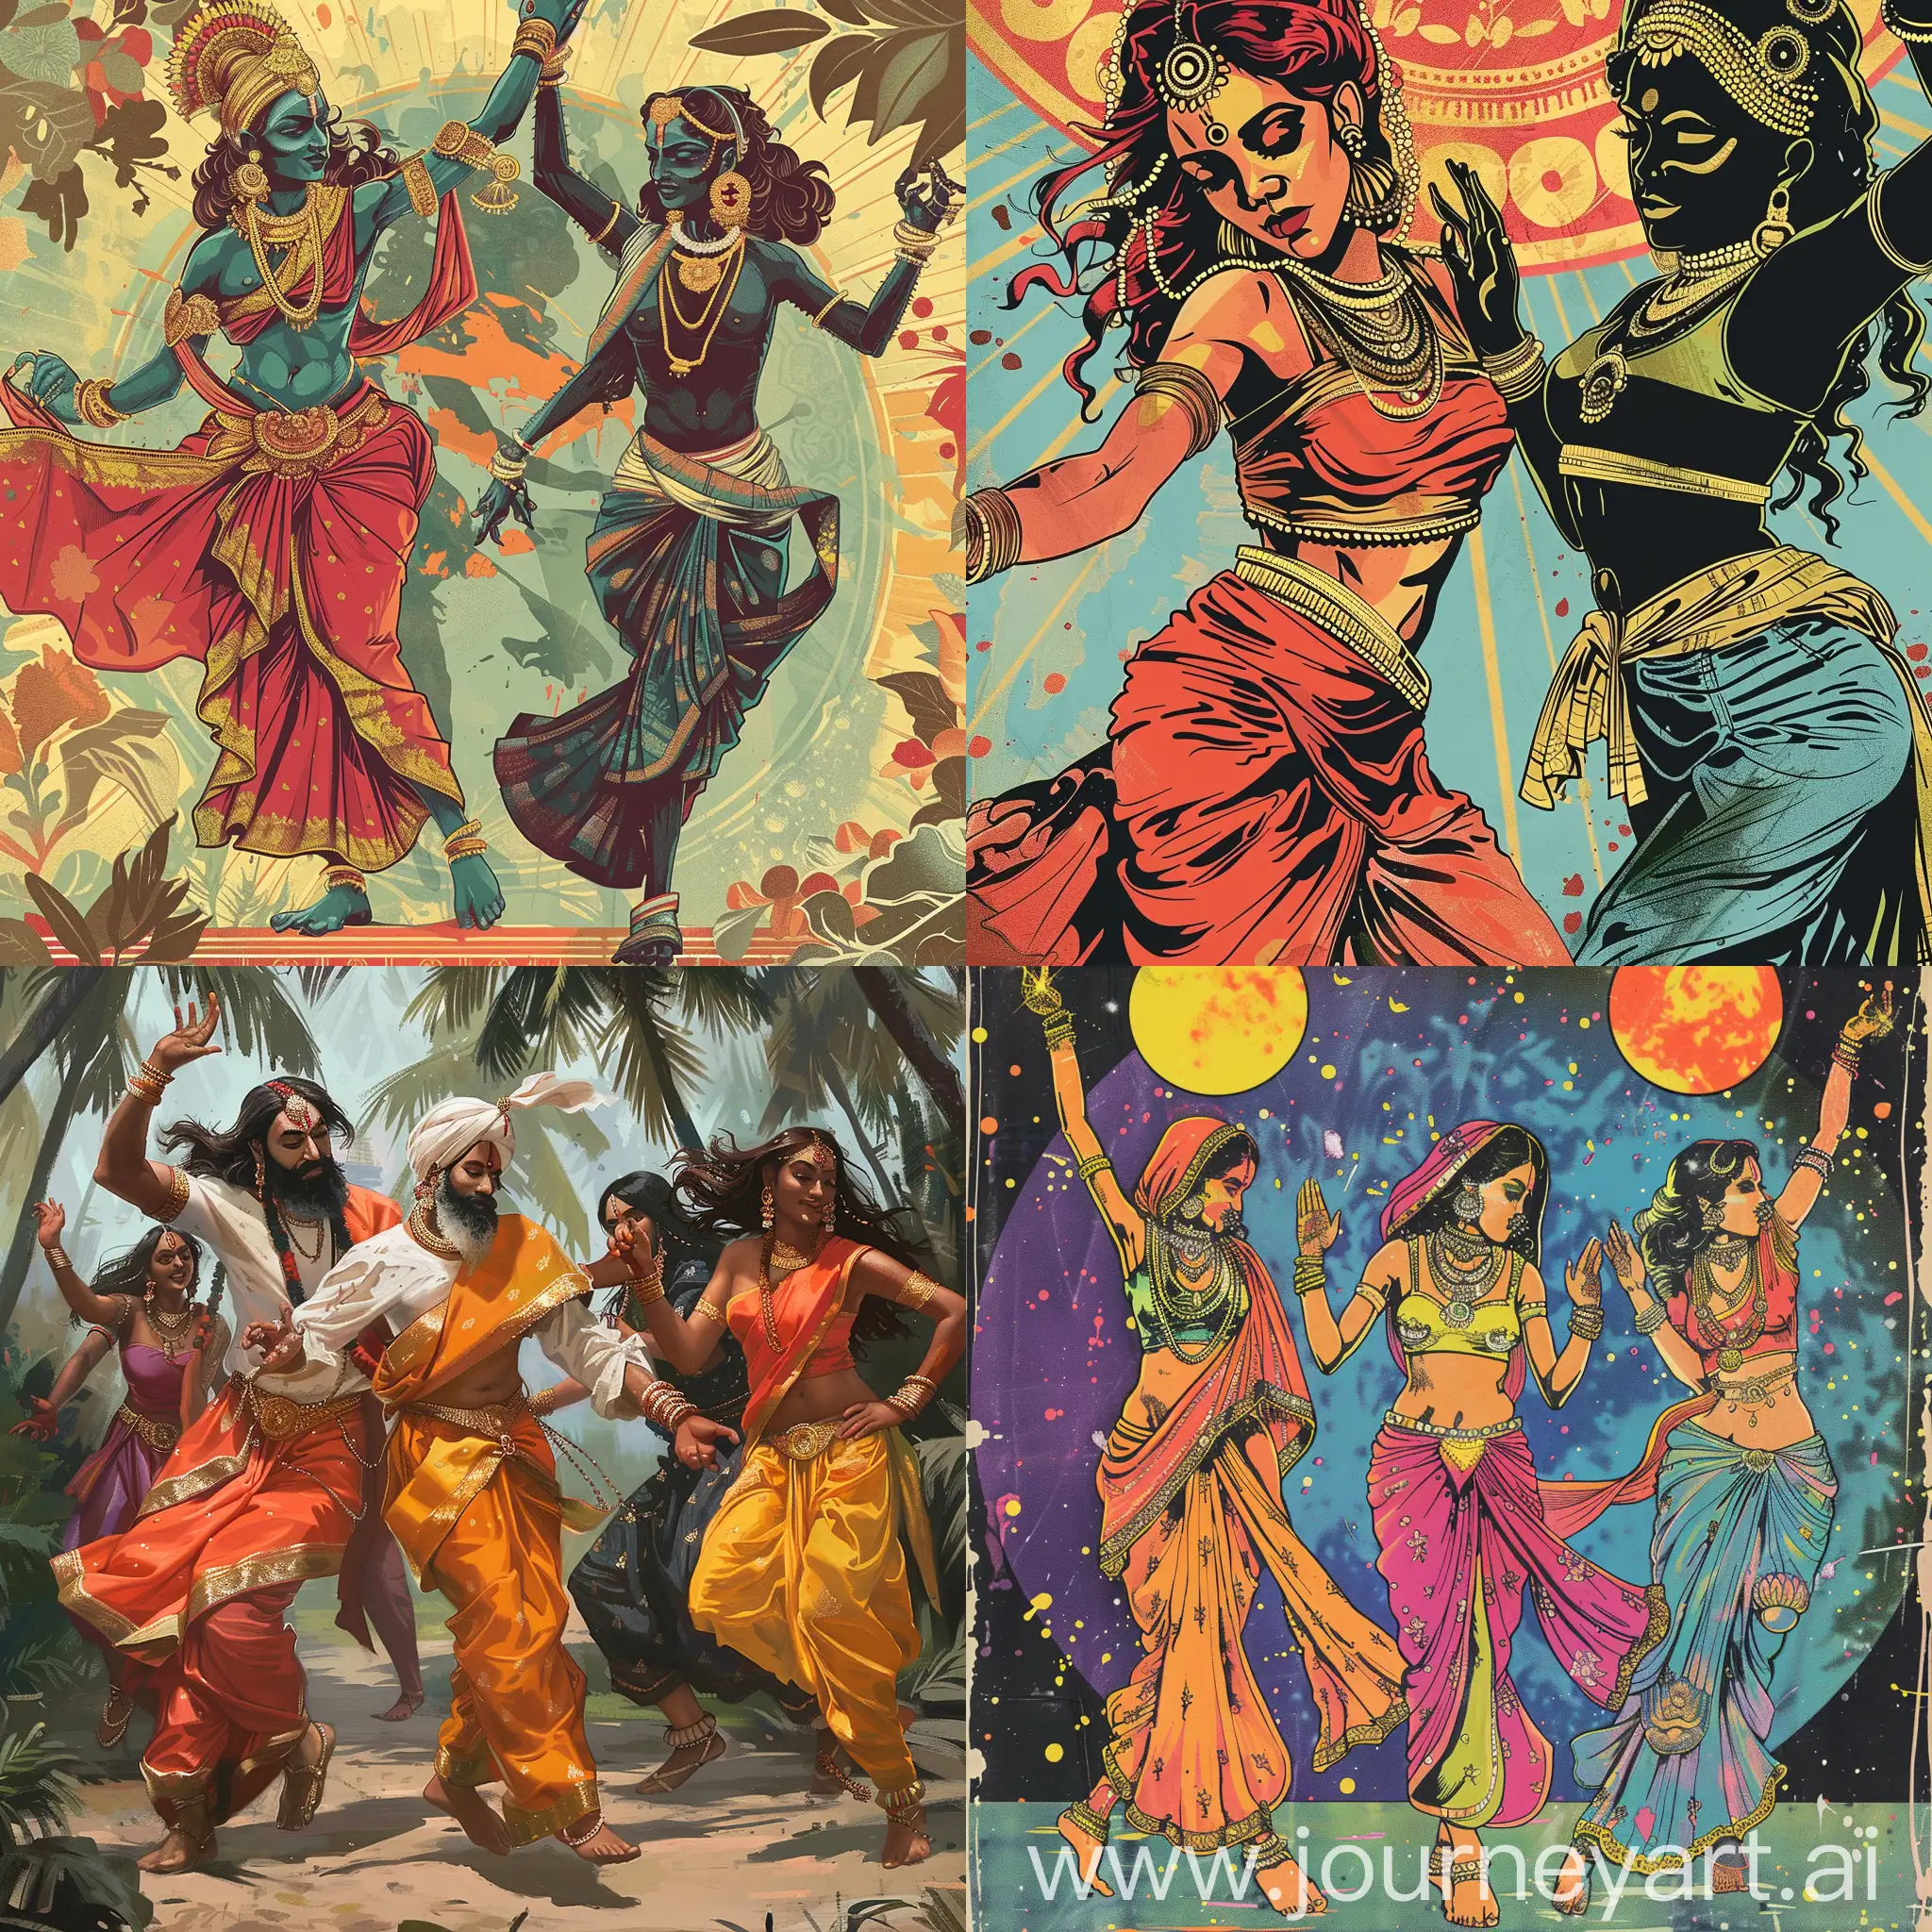 Обложка для трека, трек про индийских богов на дискотеке, индийские боги в модной одежде танцуют, deephouse music